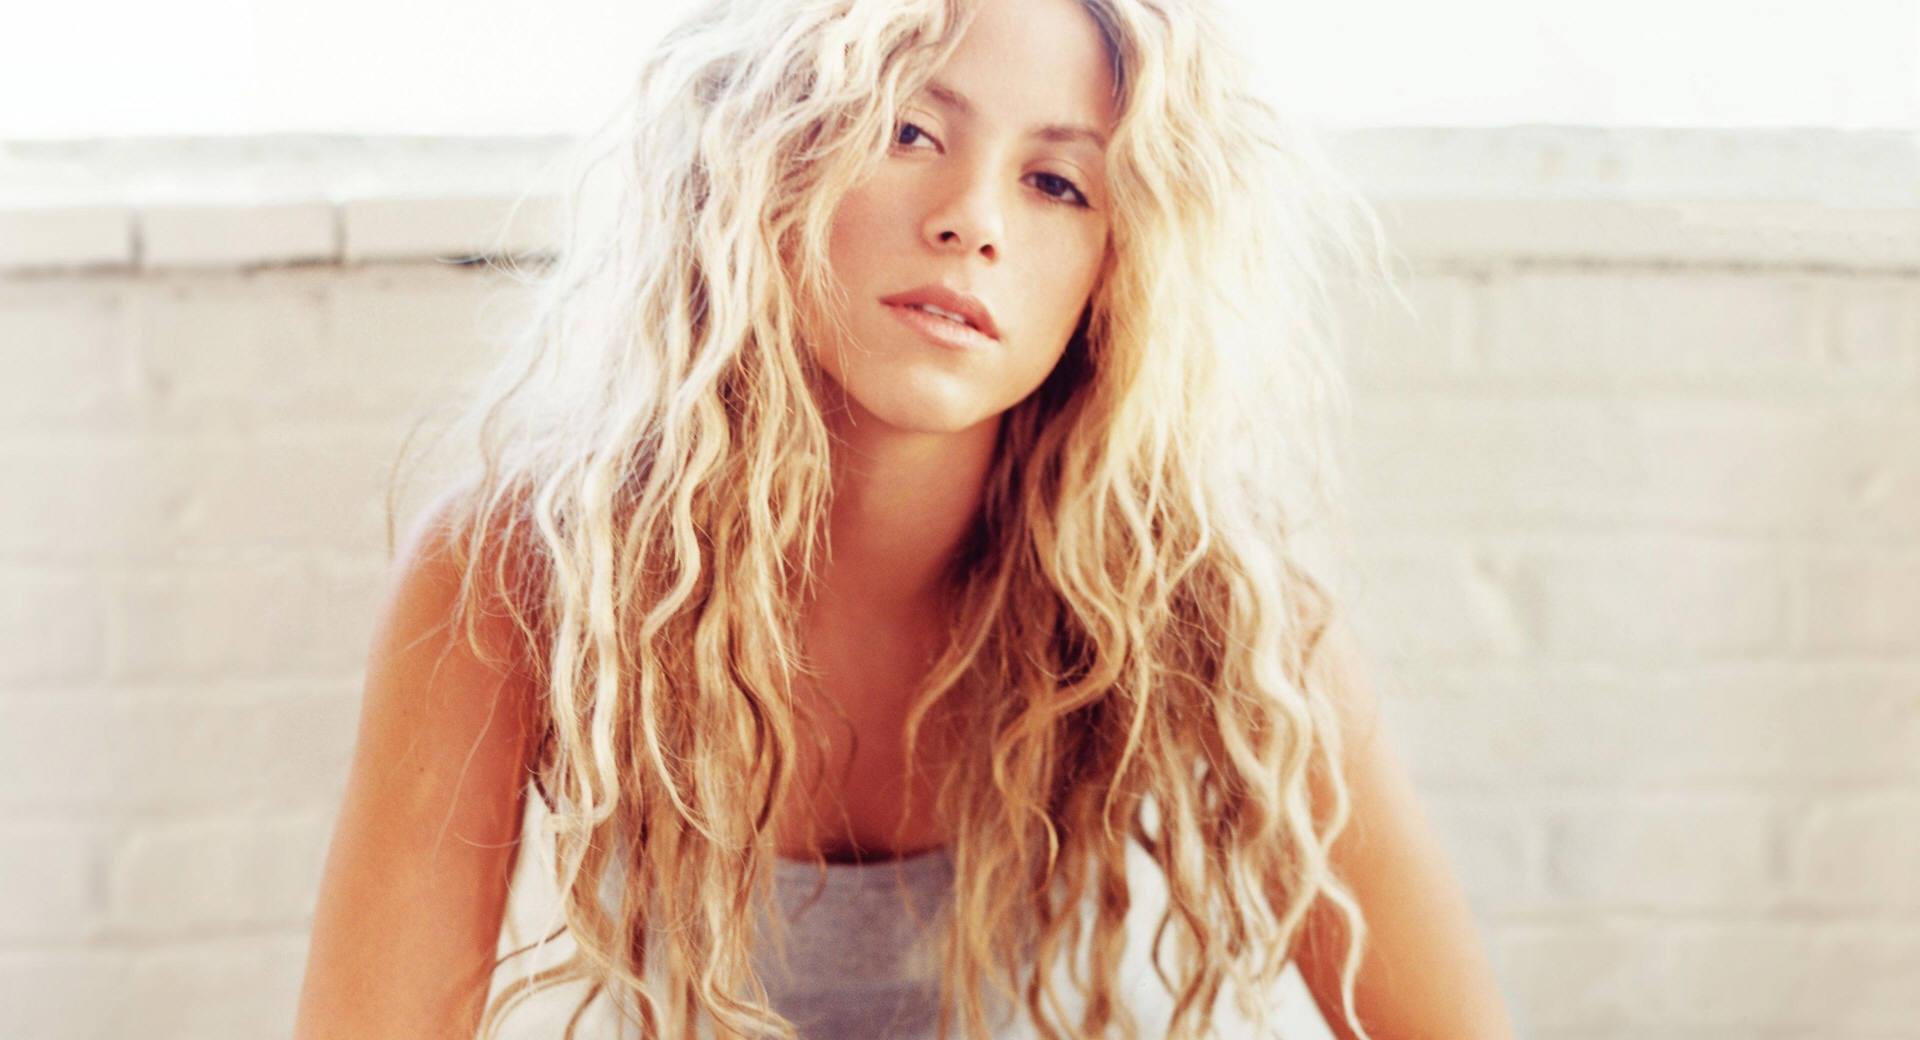 Shakira Mebarak at 1024 x 768 size wallpapers HD quality